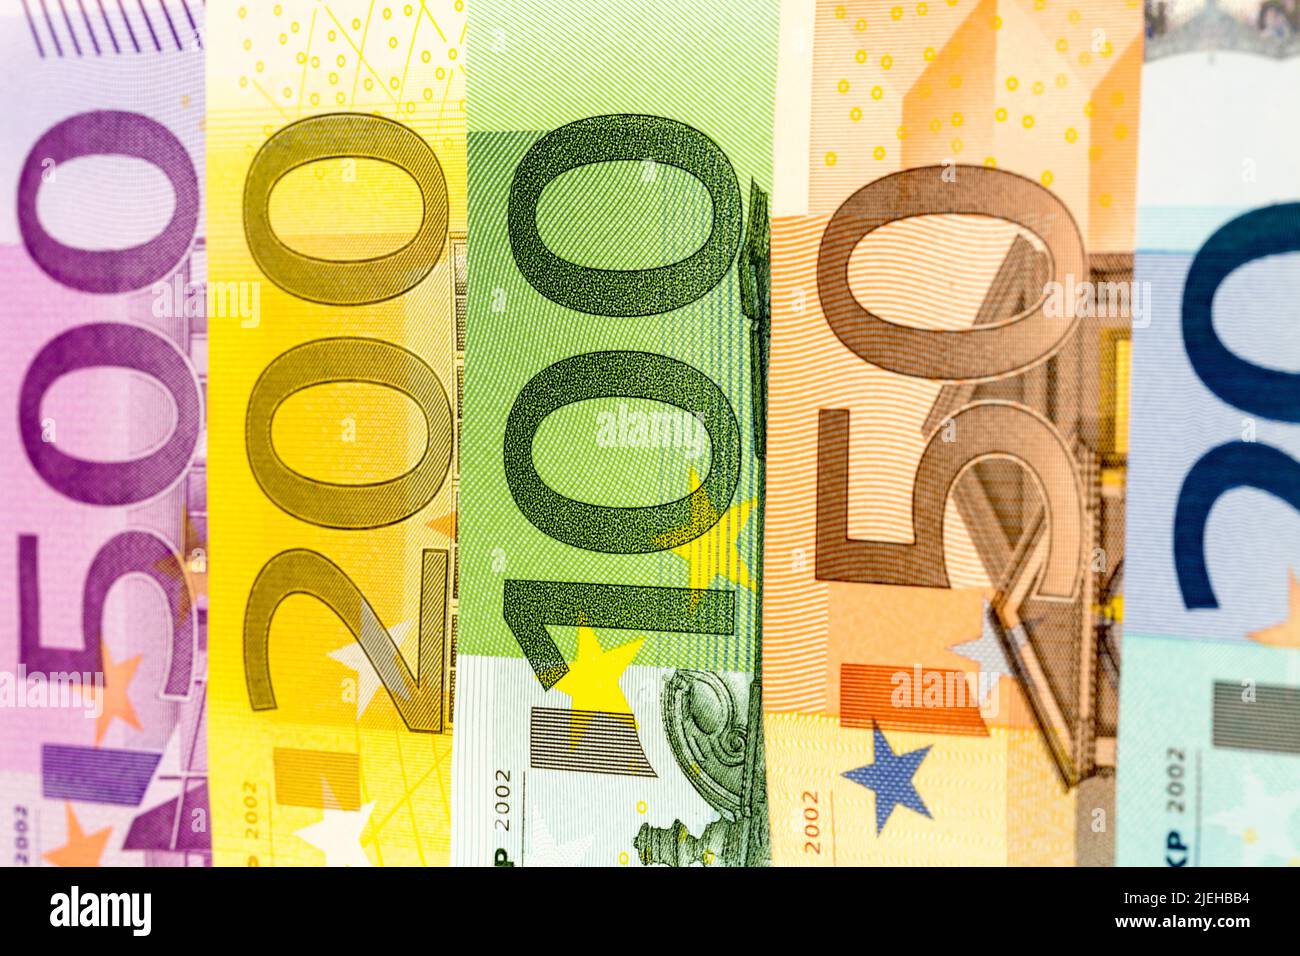 Viele Euro-Geldscheine der Europaeischen Union. Stock Photo